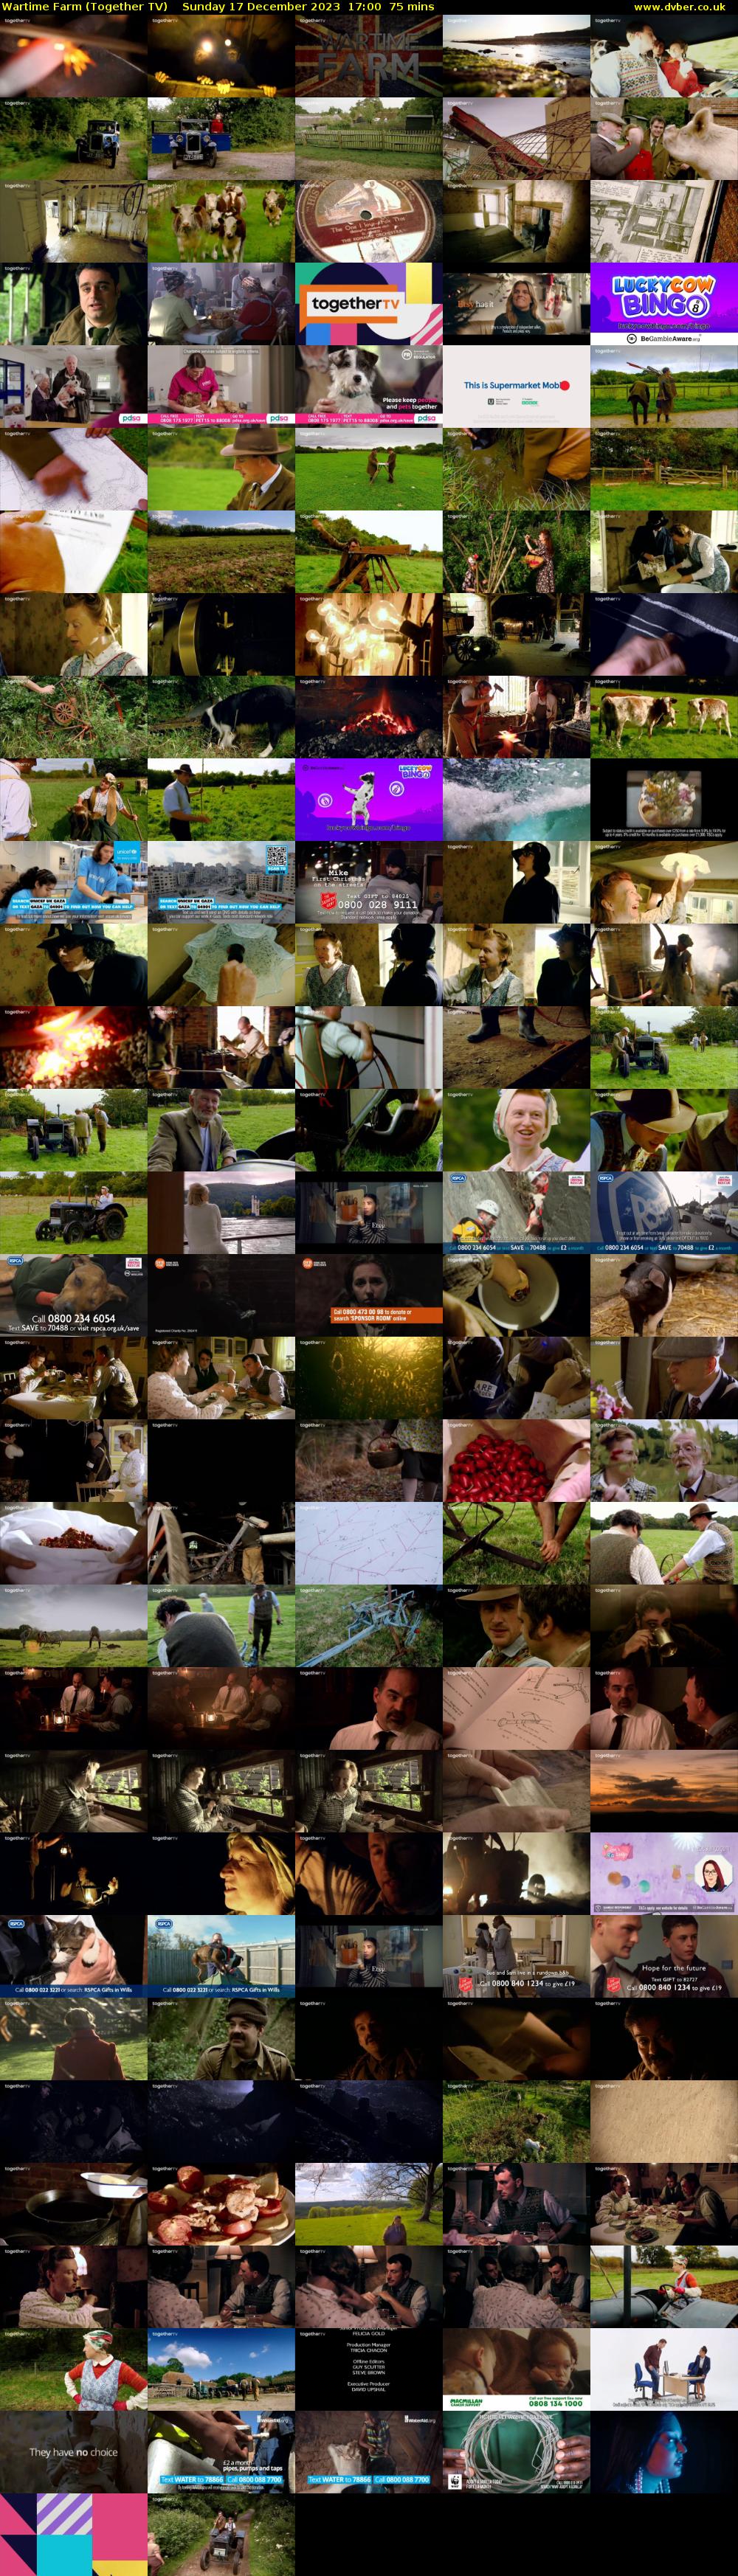 Wartime Farm (Together TV) Sunday 17 December 2023 17:00 - 18:15